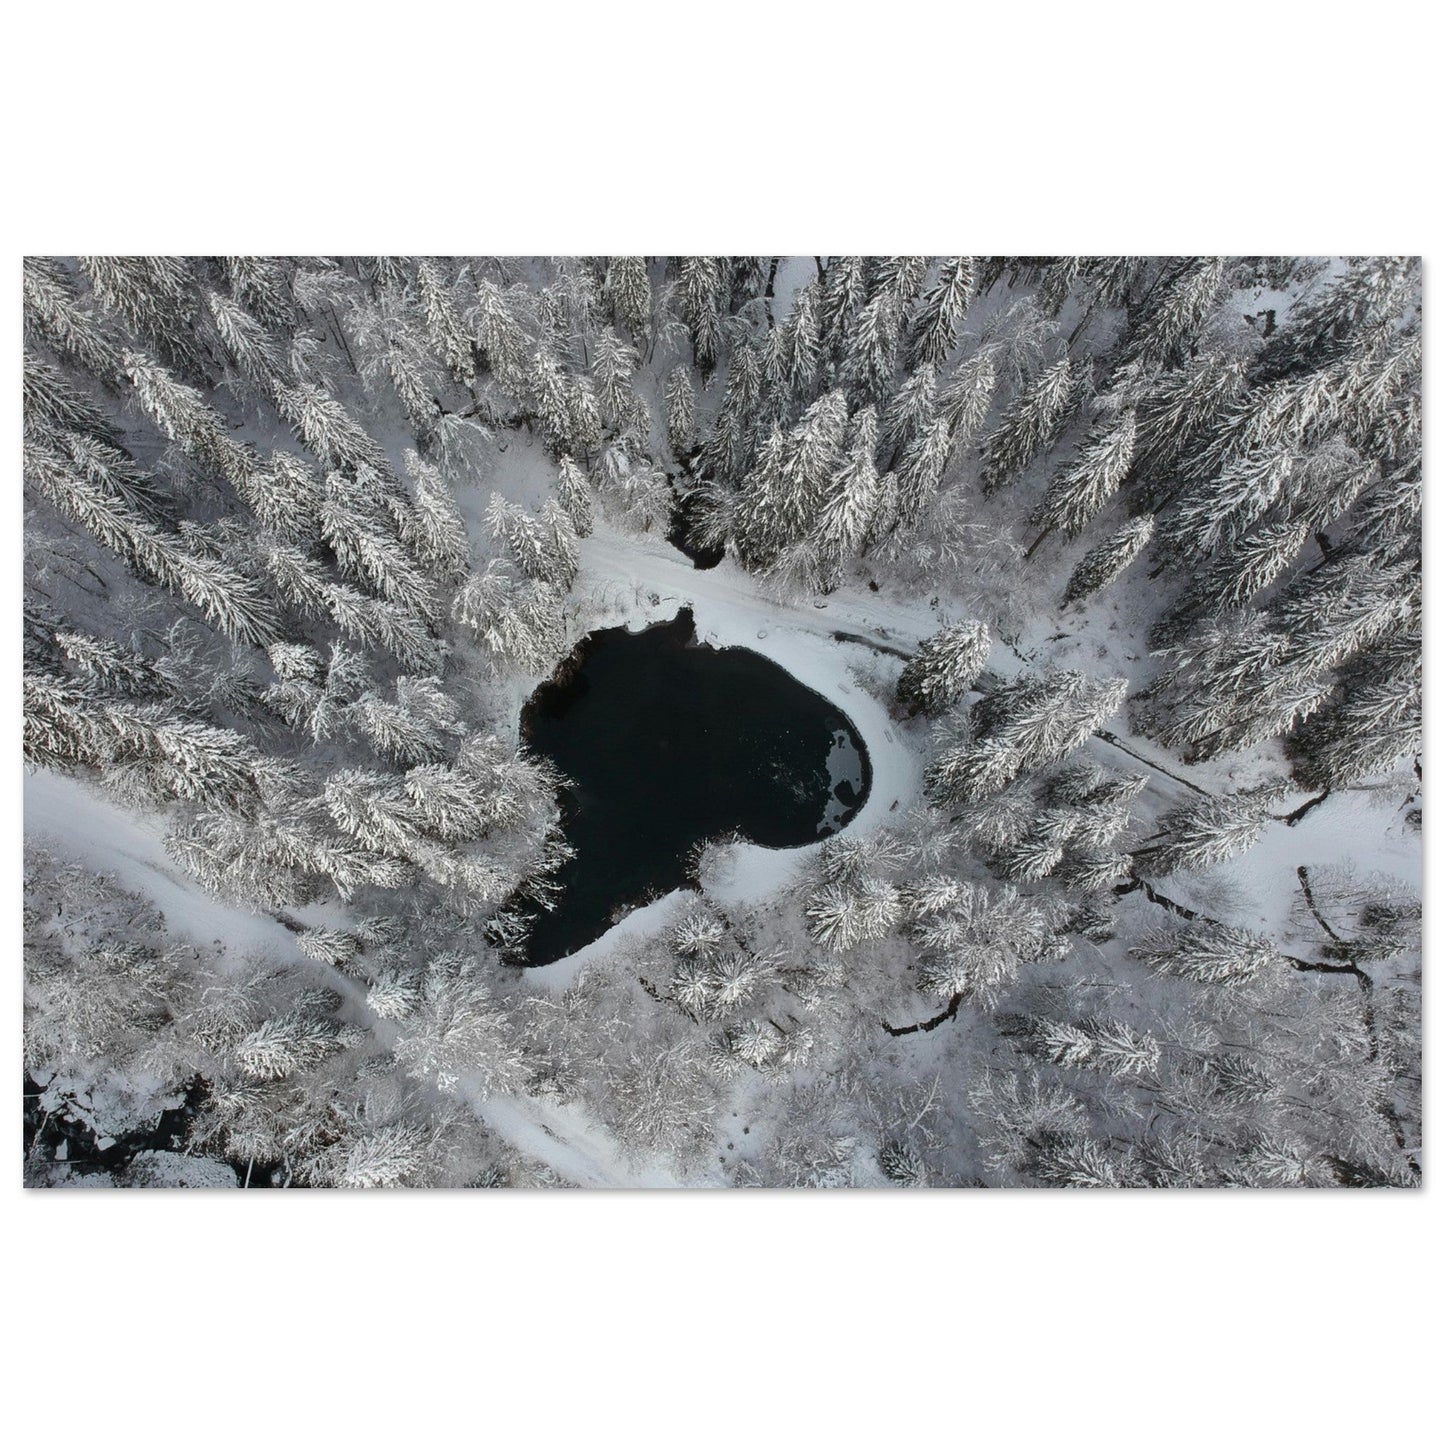 Vente Photo drone de sapins enneigés et lac, Cirque du Fer-à-Cheval - Tableau photo alu montagne